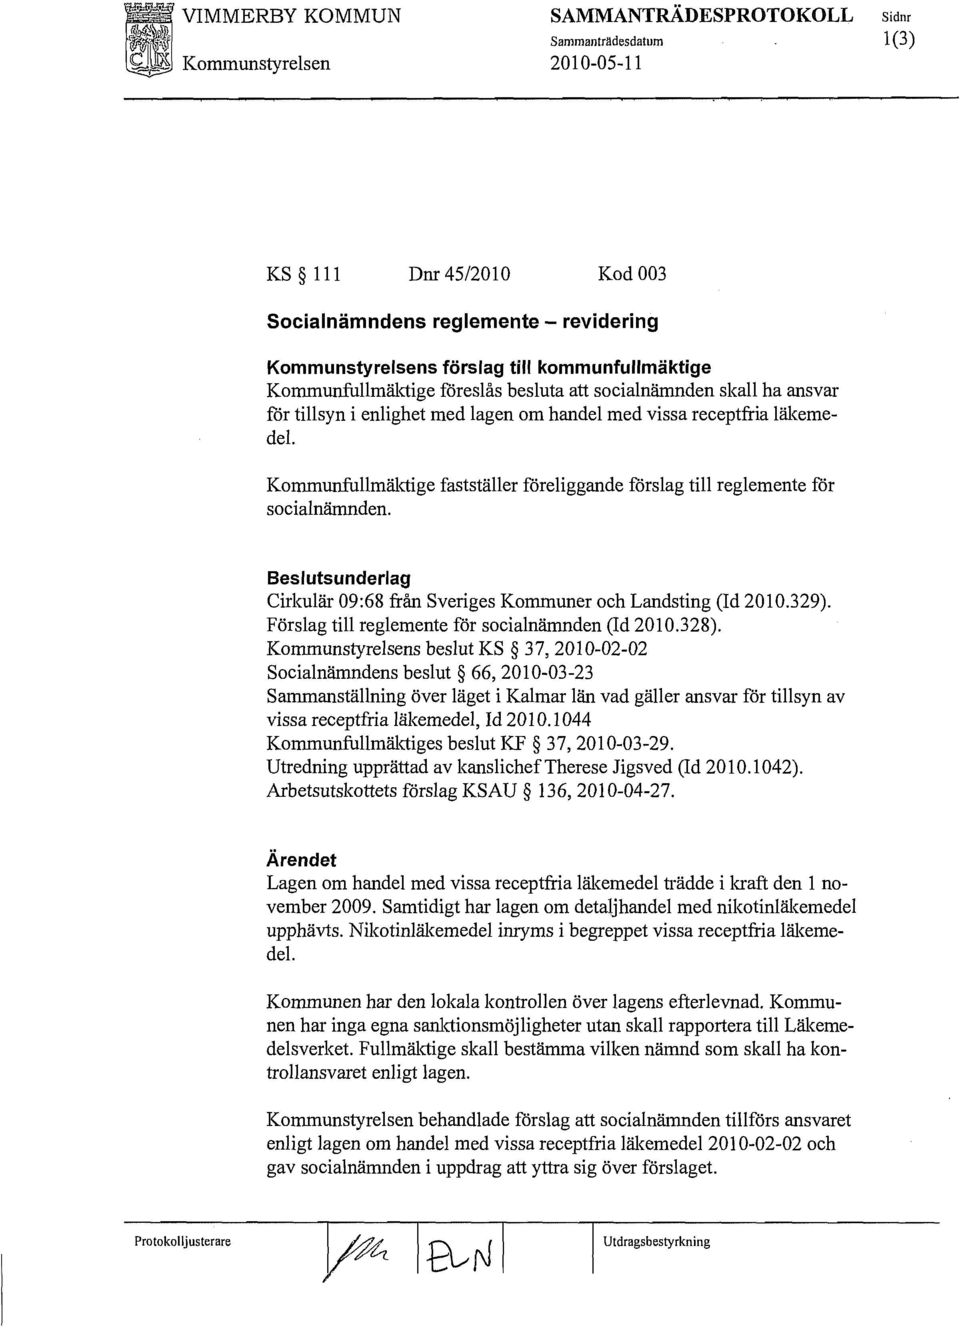 Beslutsunderlag Cirkulär 09:68 från Sveriges Kommuner och Landsting (Id 2010.329). Förslag till reglemente för socialnämnden (Id 2010.328).